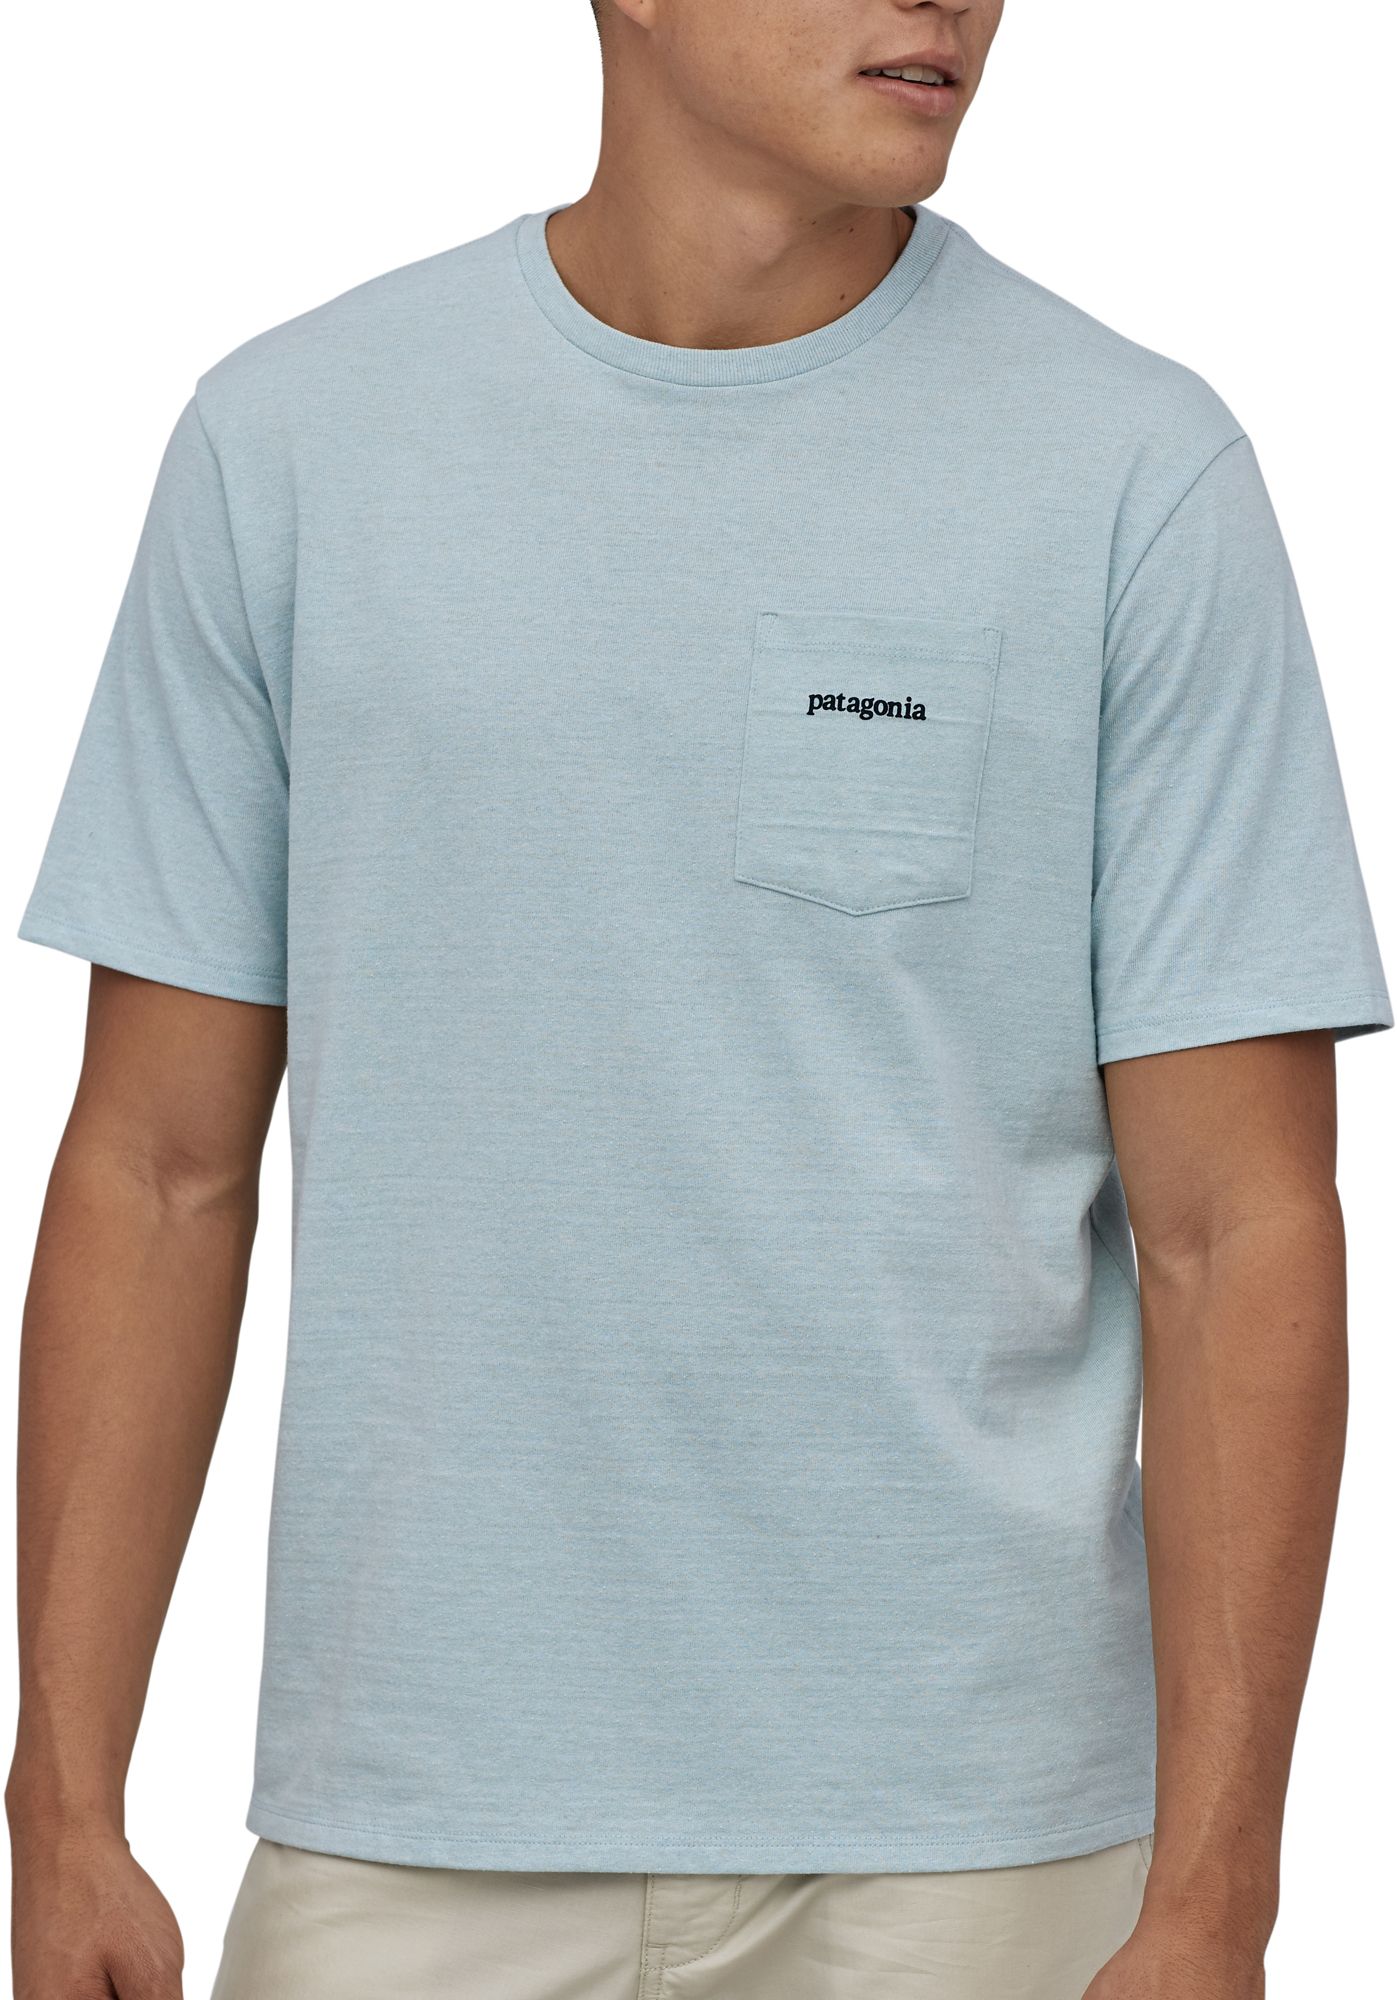 patagonia short sleeve shirts